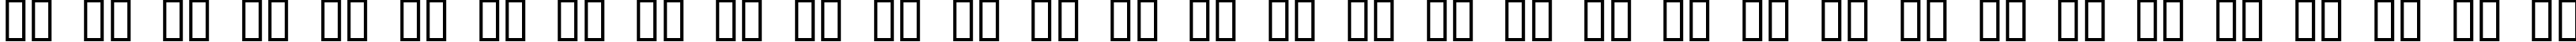 Пример написания русского алфавита шрифтом JI Kaleidoscope Bats 4